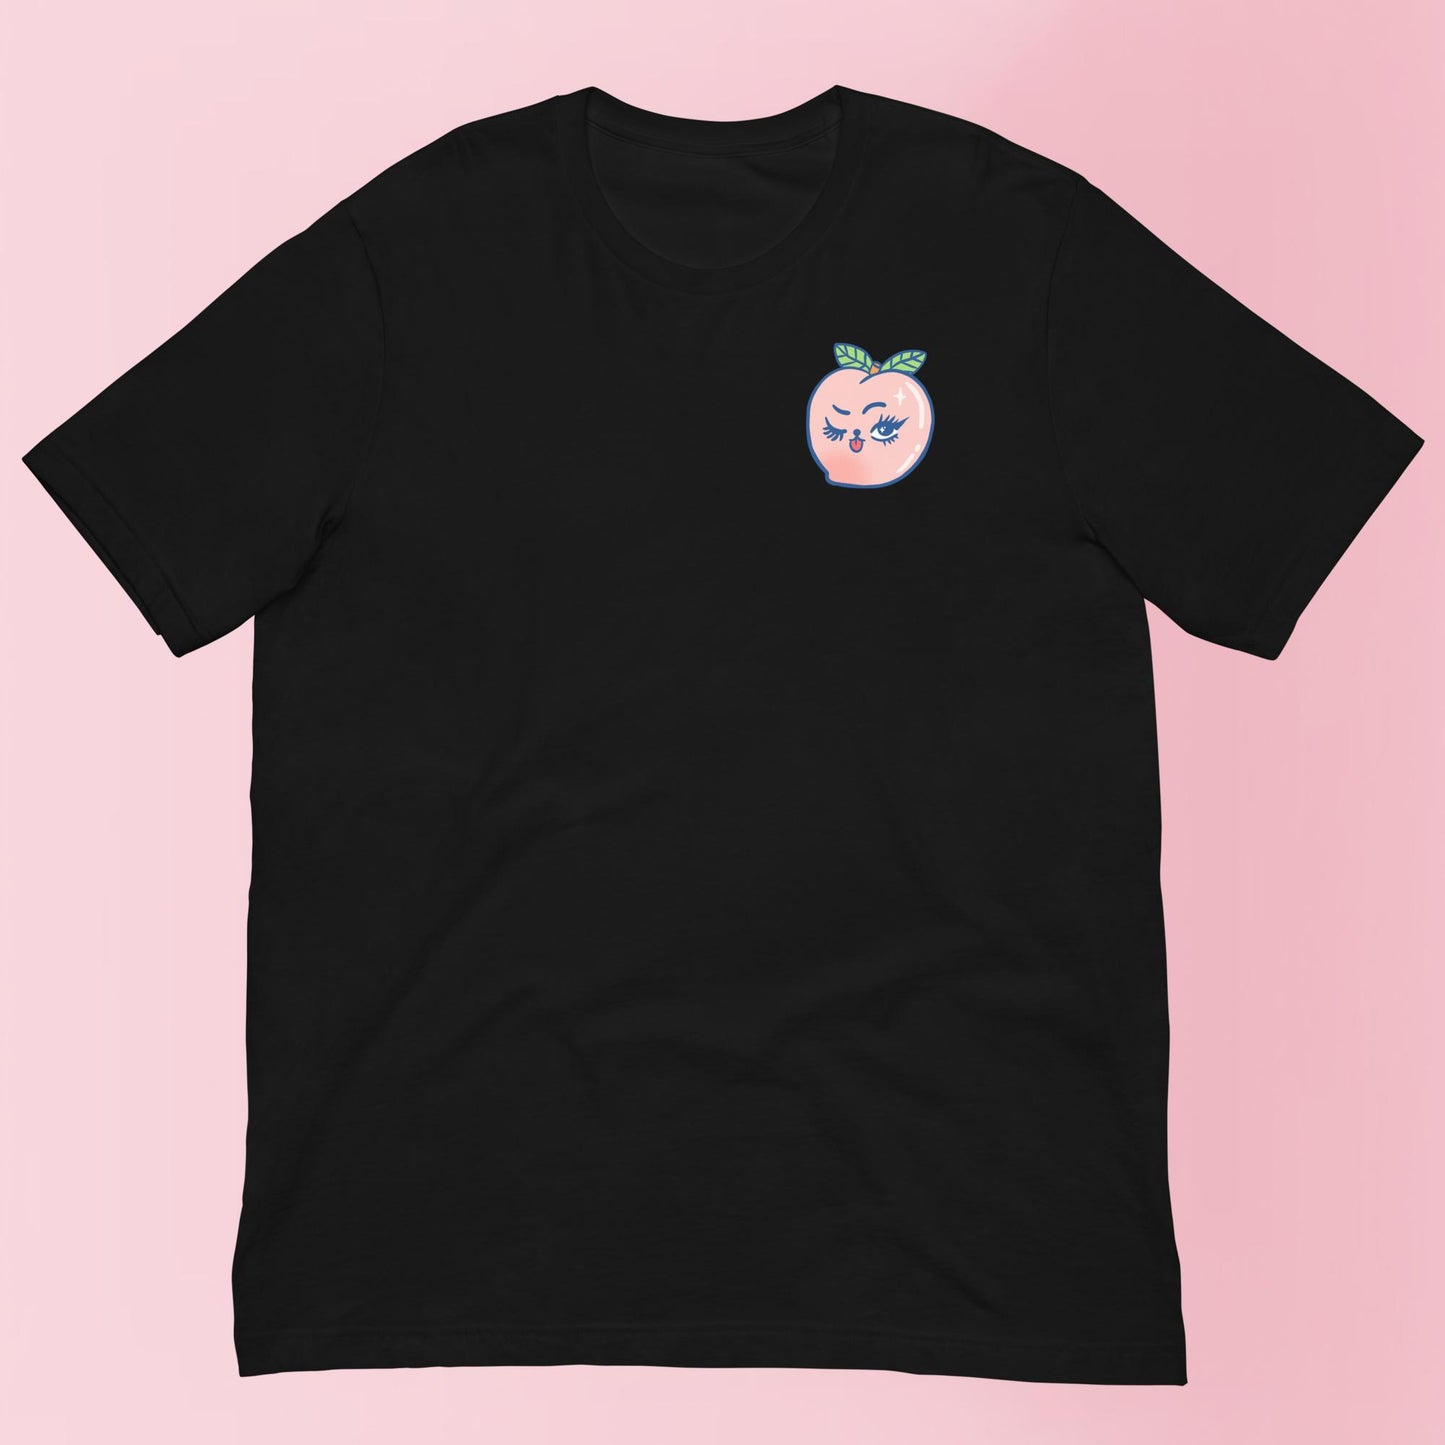 Peachy Keen - Unisex Shirt